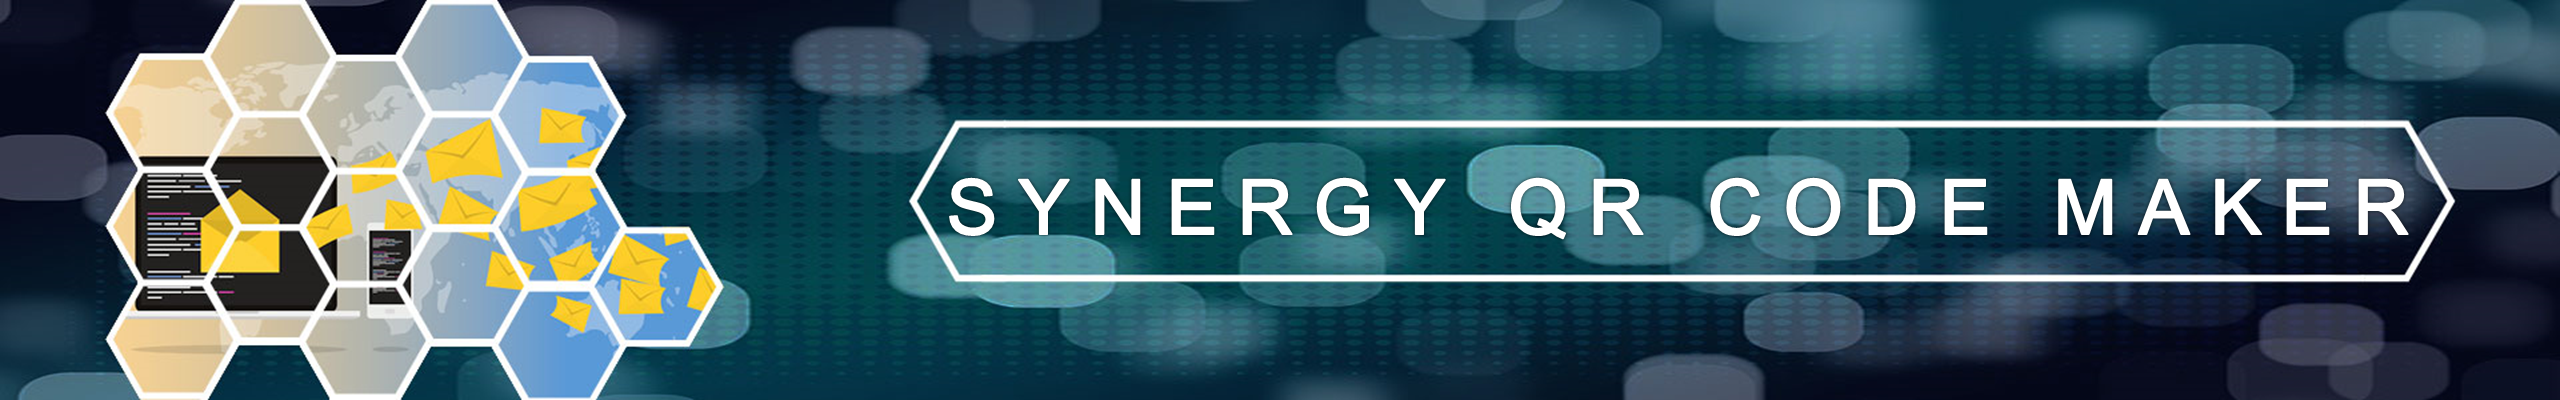 Synergy-QR-Code-Maker-Logo